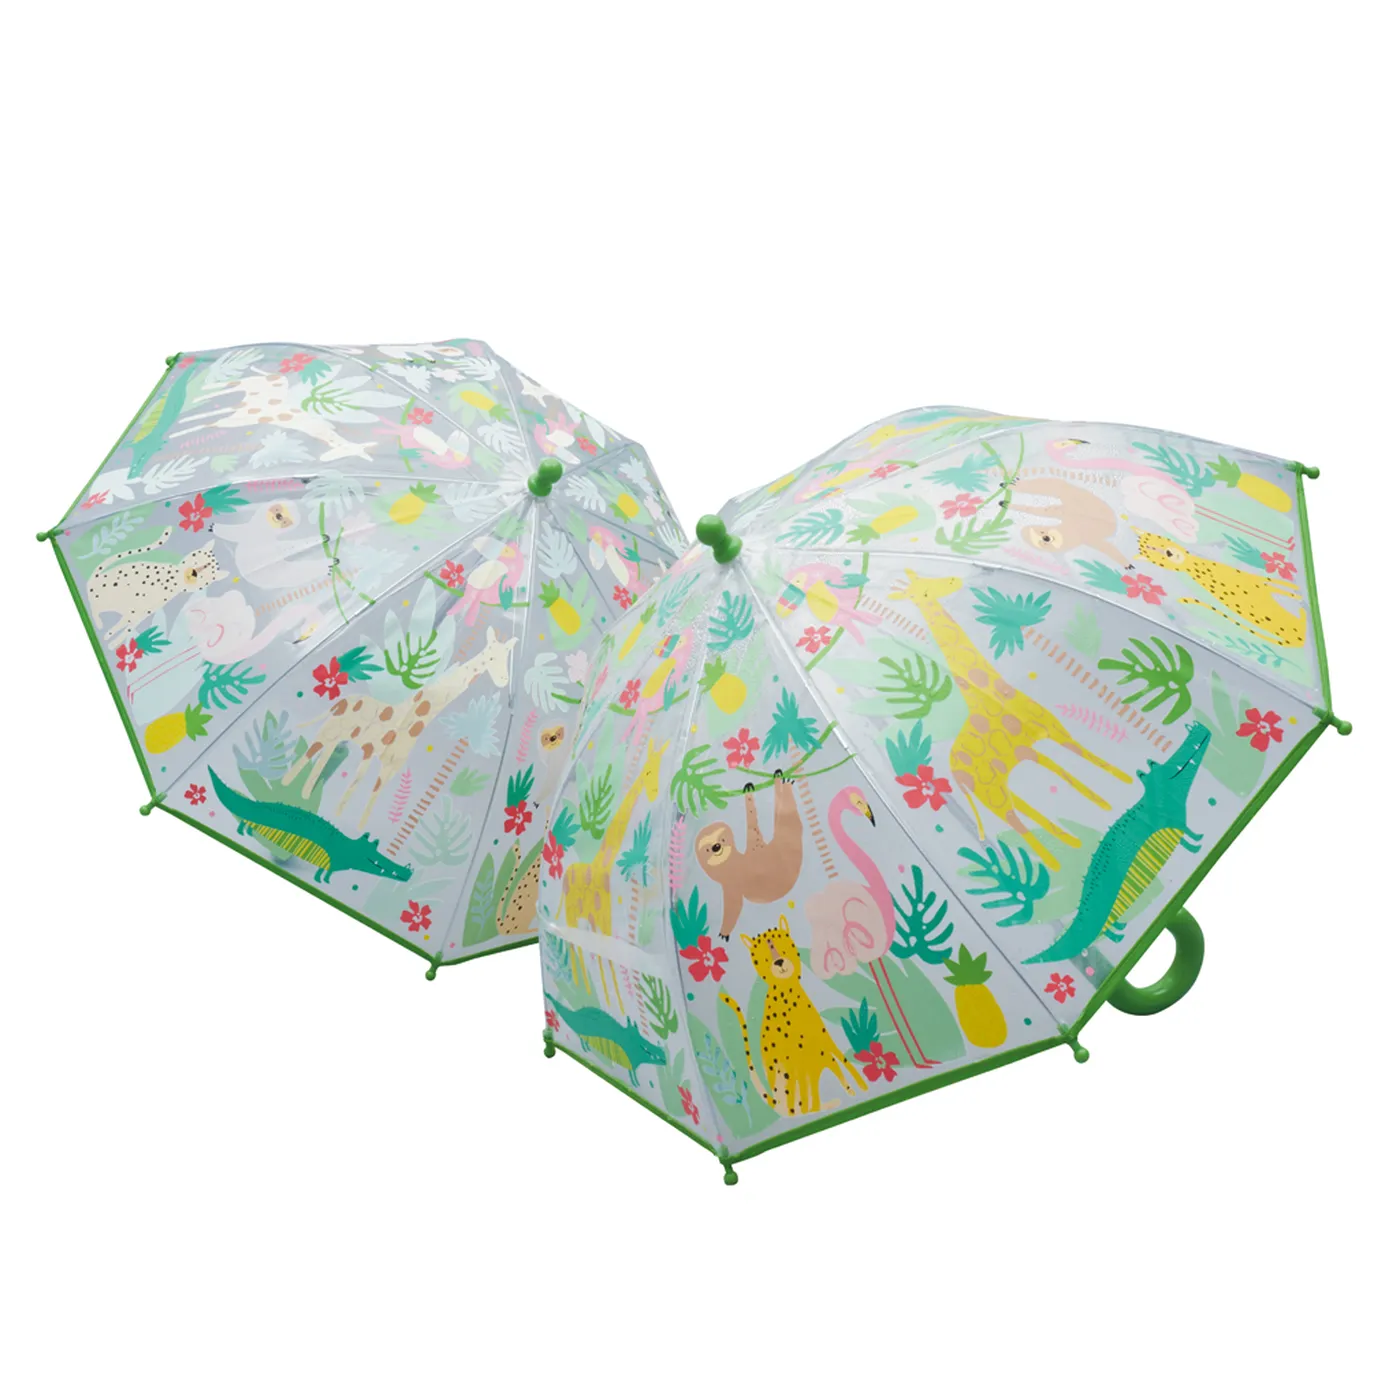 Umbrela transparenta pentru copii, in culori schimbatoare Jungle, 3 ani+, Floss & Rock